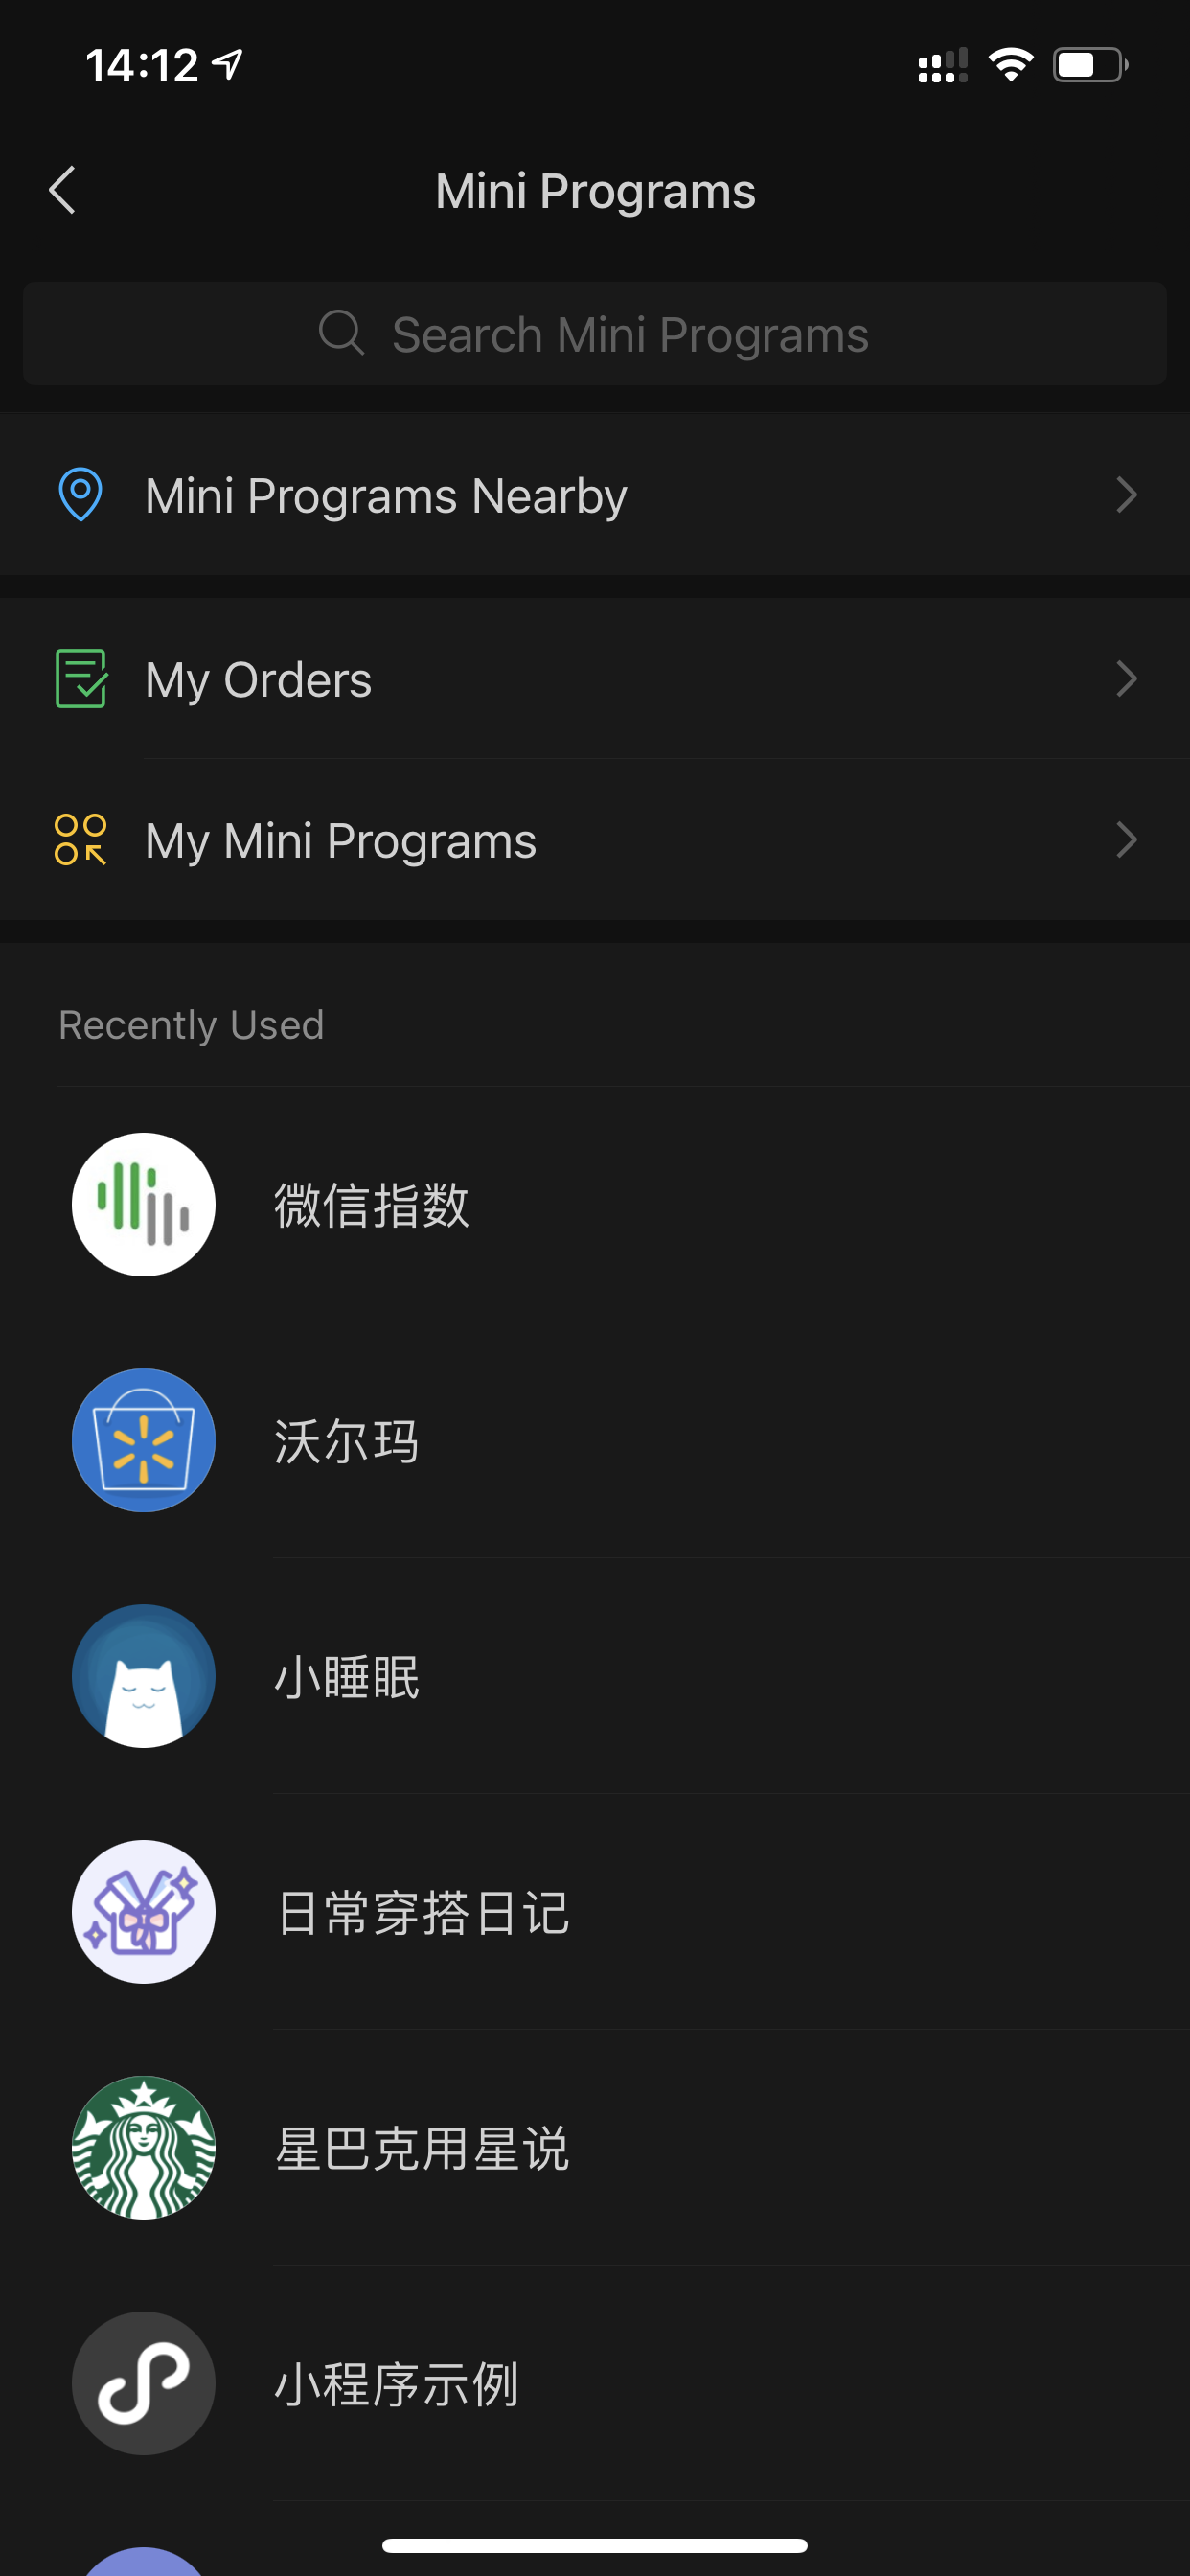 Список недавно запущенных мини-приложений в суперприложении WeChat.